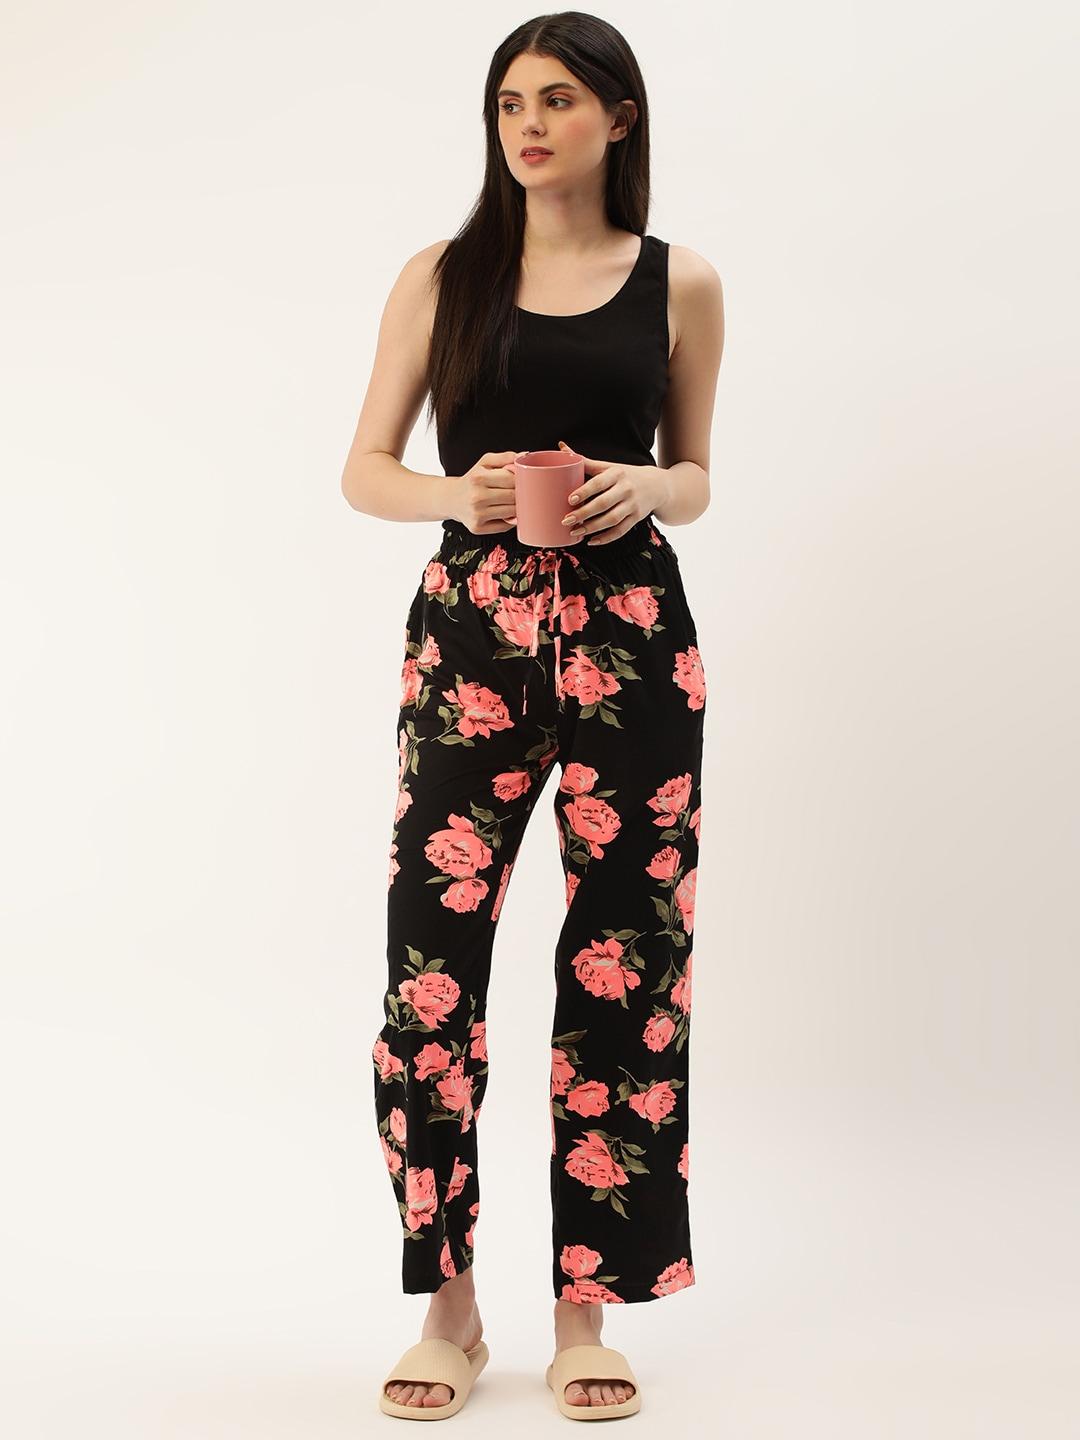 etc floral printed lounge pants